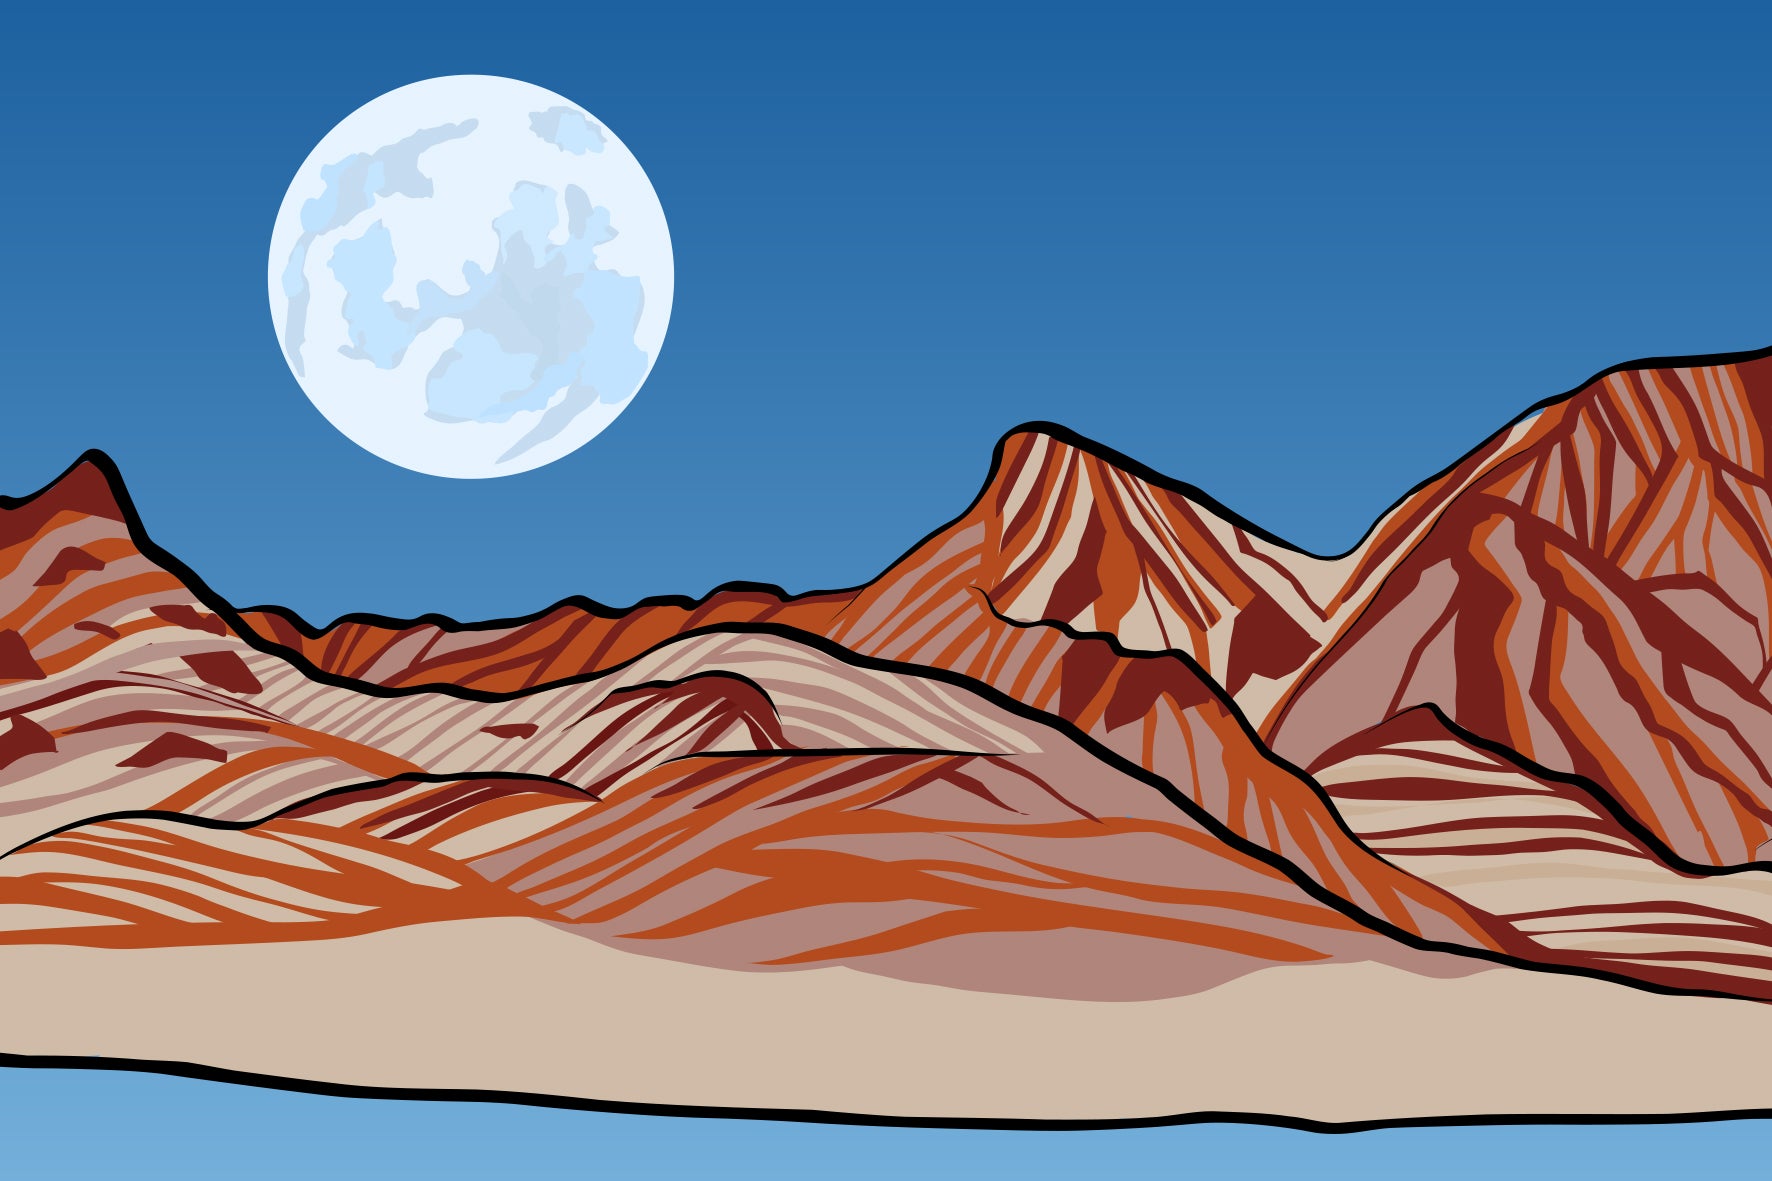 Valle de la Luna, Atacama